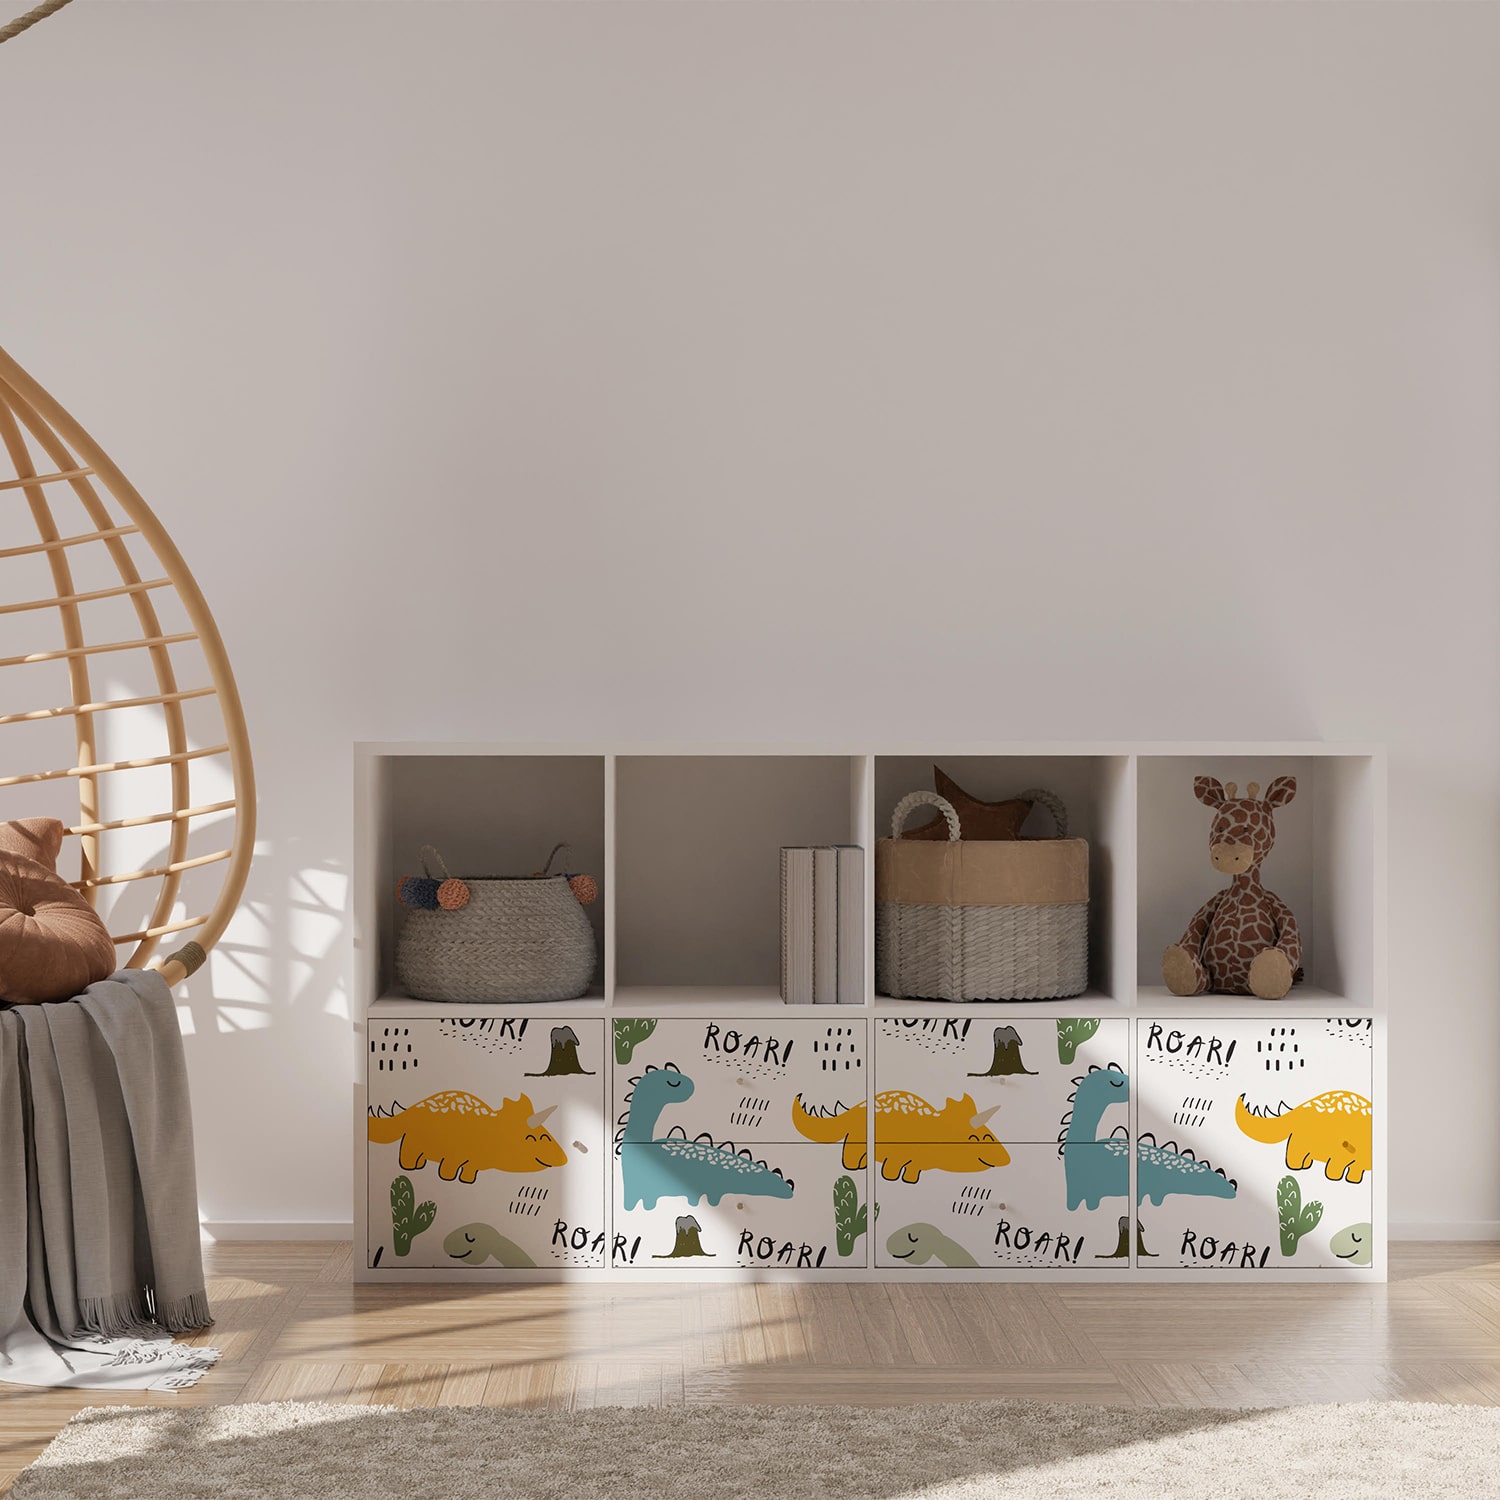 PP82-meuble-papier-peint-adhesif-decoratif-revetement-vinyle-motifs-dinosaure-renovation-meuble-mur-min